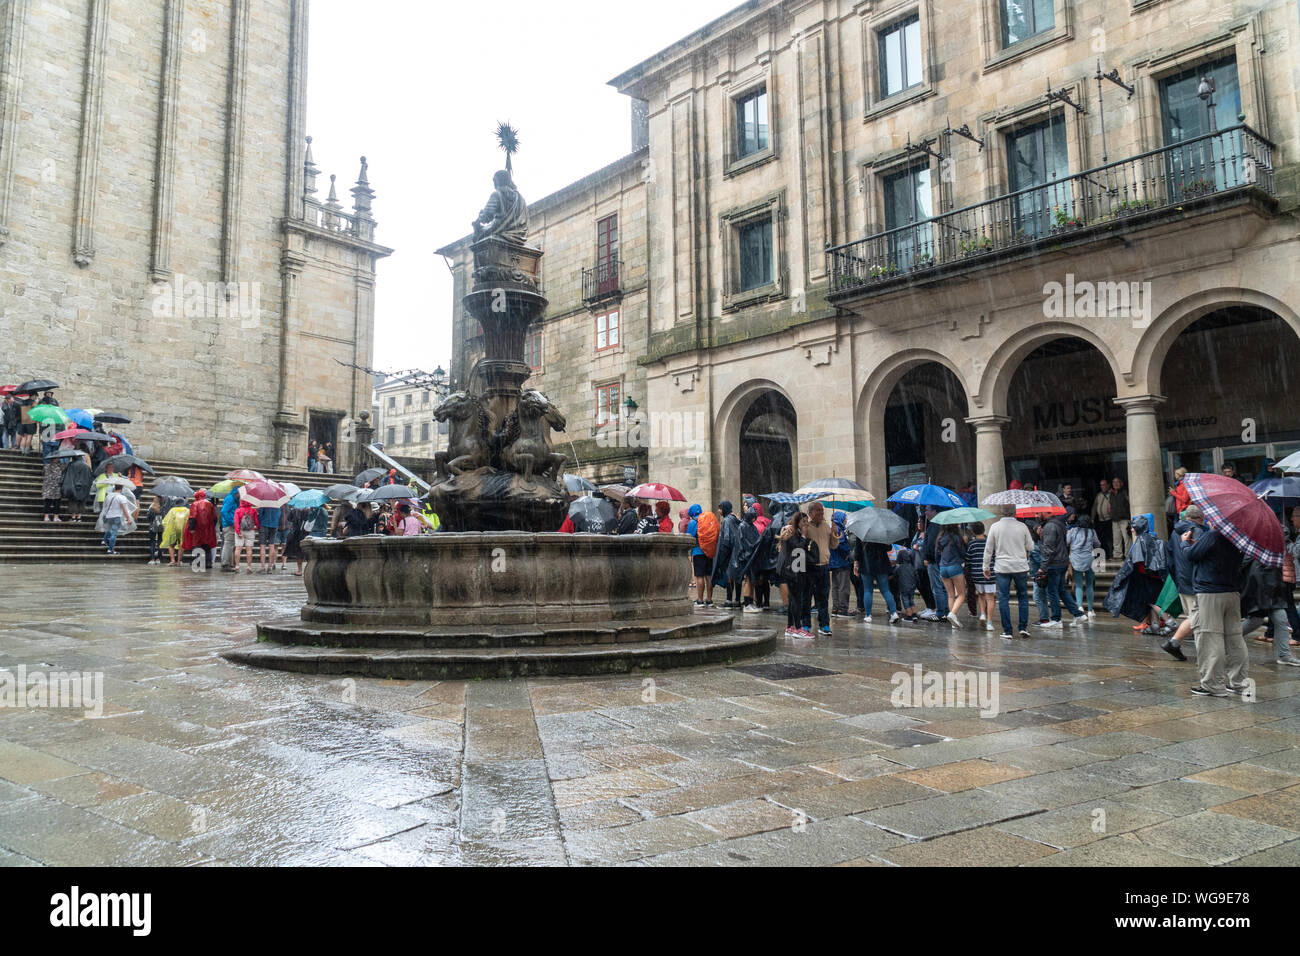 Santiago de Compostela, España, Agosto 9, 2019: peregrinos y turistas esperando en una fila para entrar a la Catedral de Santiago de Compostela. Plaza de Platerias Foto de stock